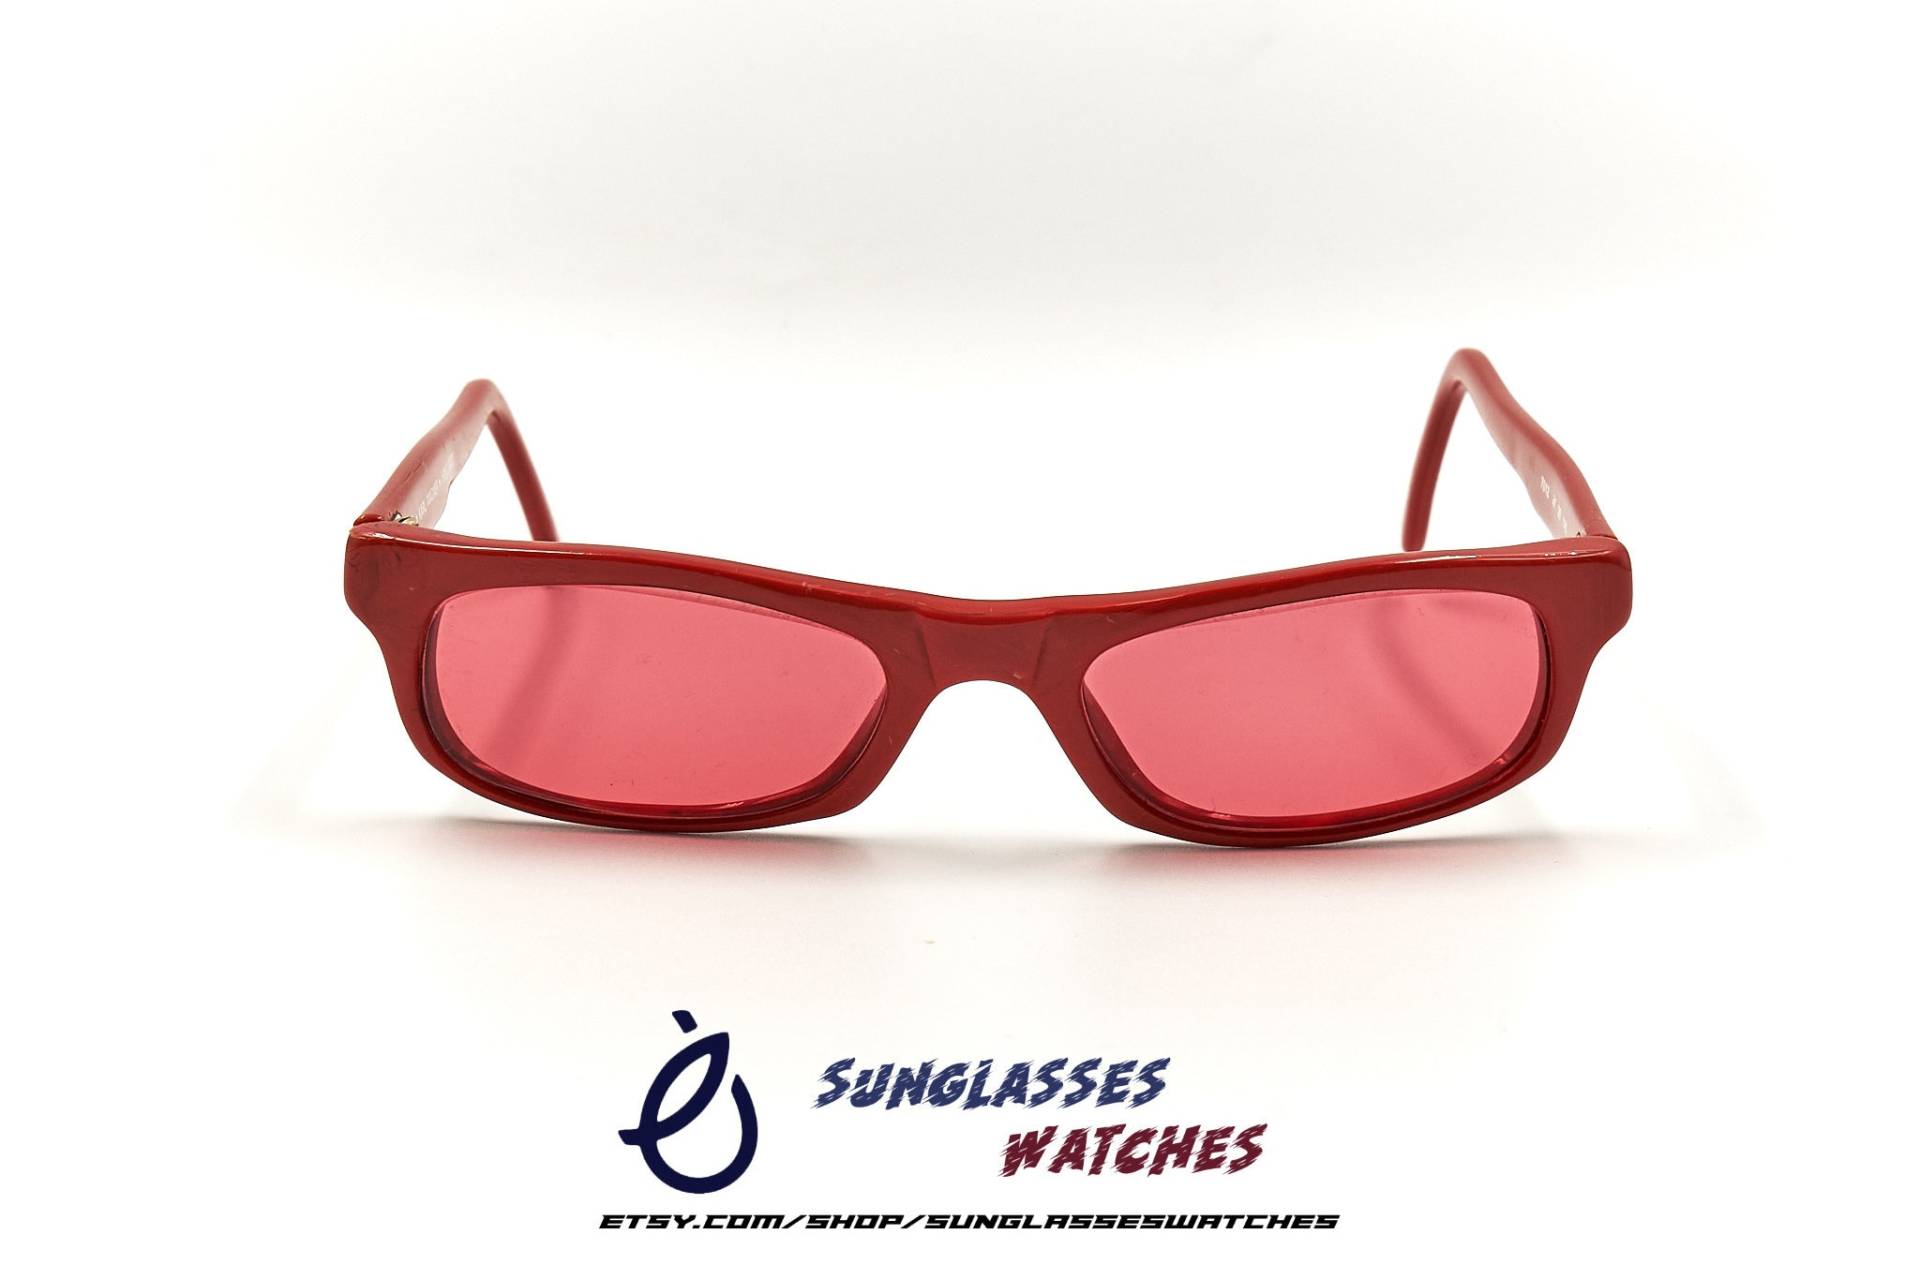 Karl Wagner 7012 47 20 Rechteckig Handgemacht Rot Acetat Vintage Sonnenbrille 1990Er Jahre/New Old Stock Nos Cateye Eyewear For Men & Women von SunglassesWatches